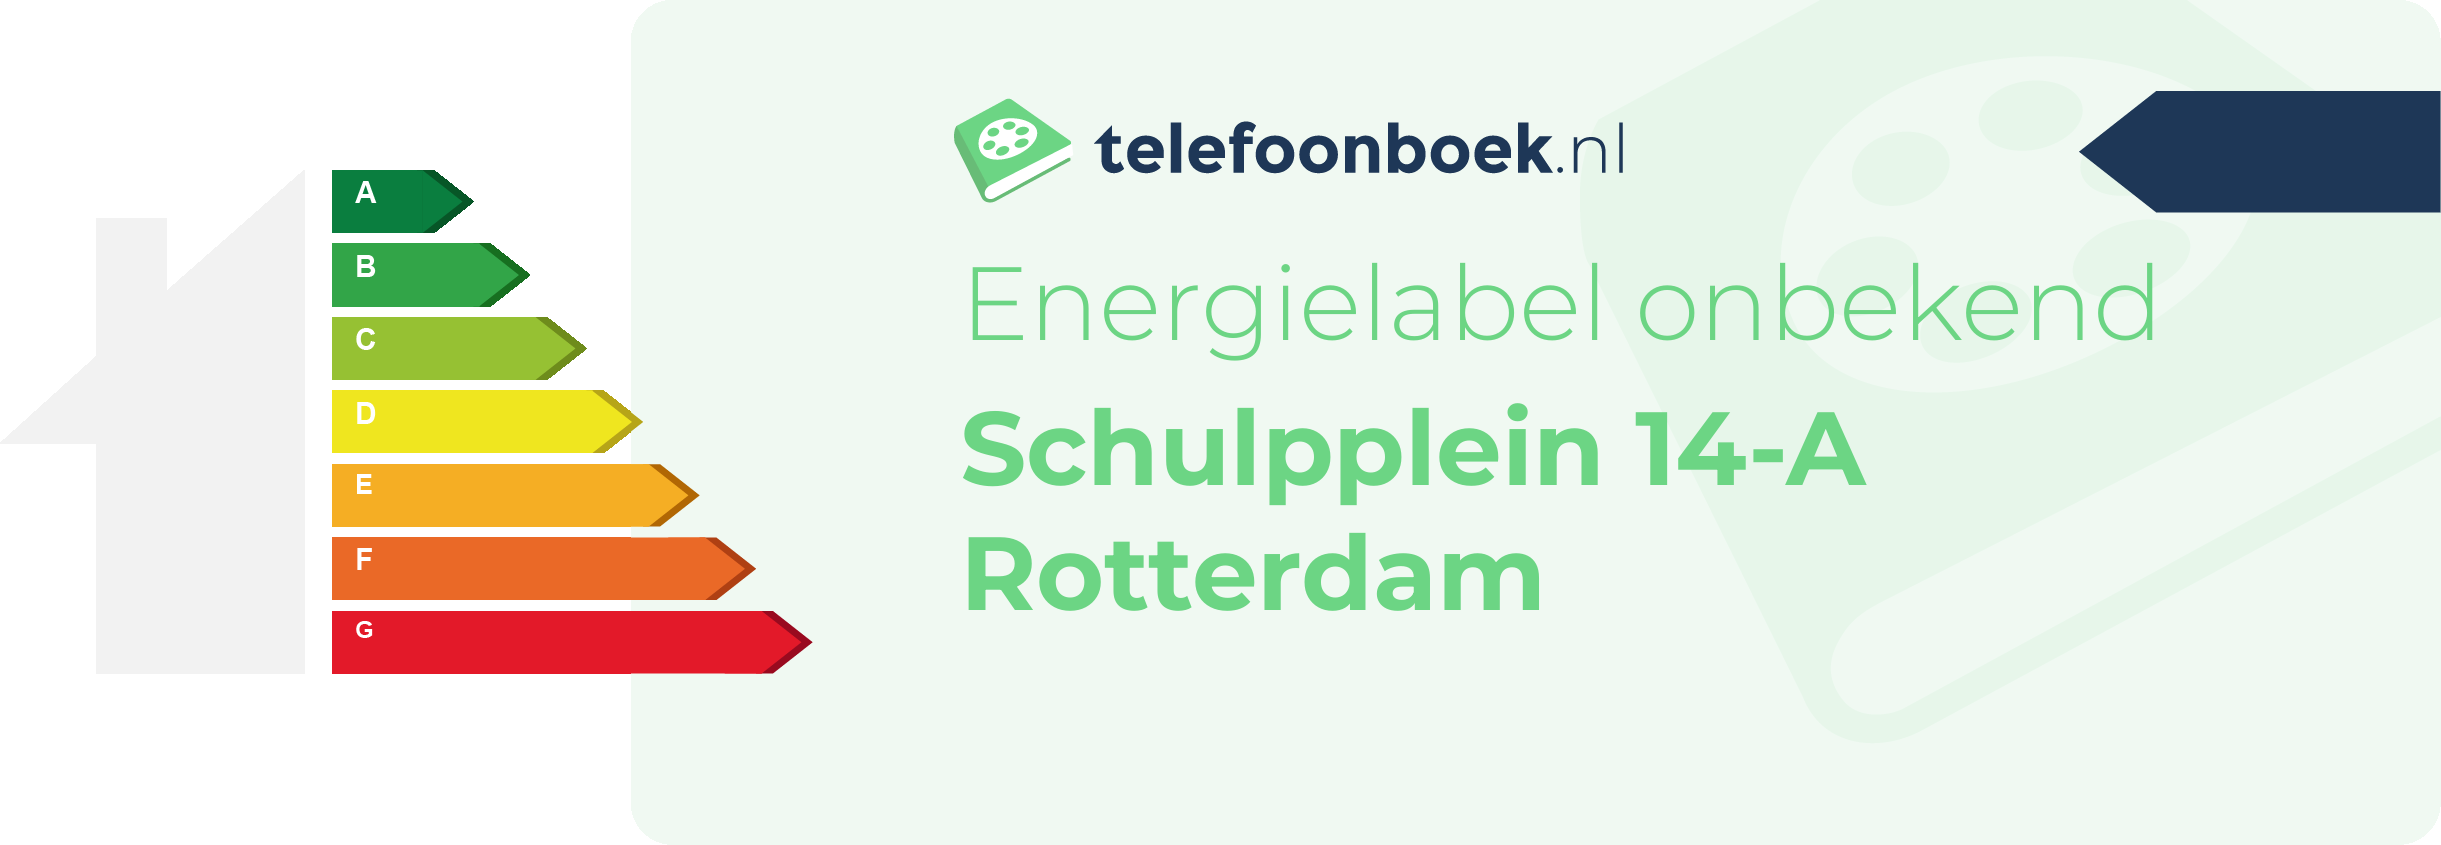 Energielabel Schulpplein 14-A Rotterdam